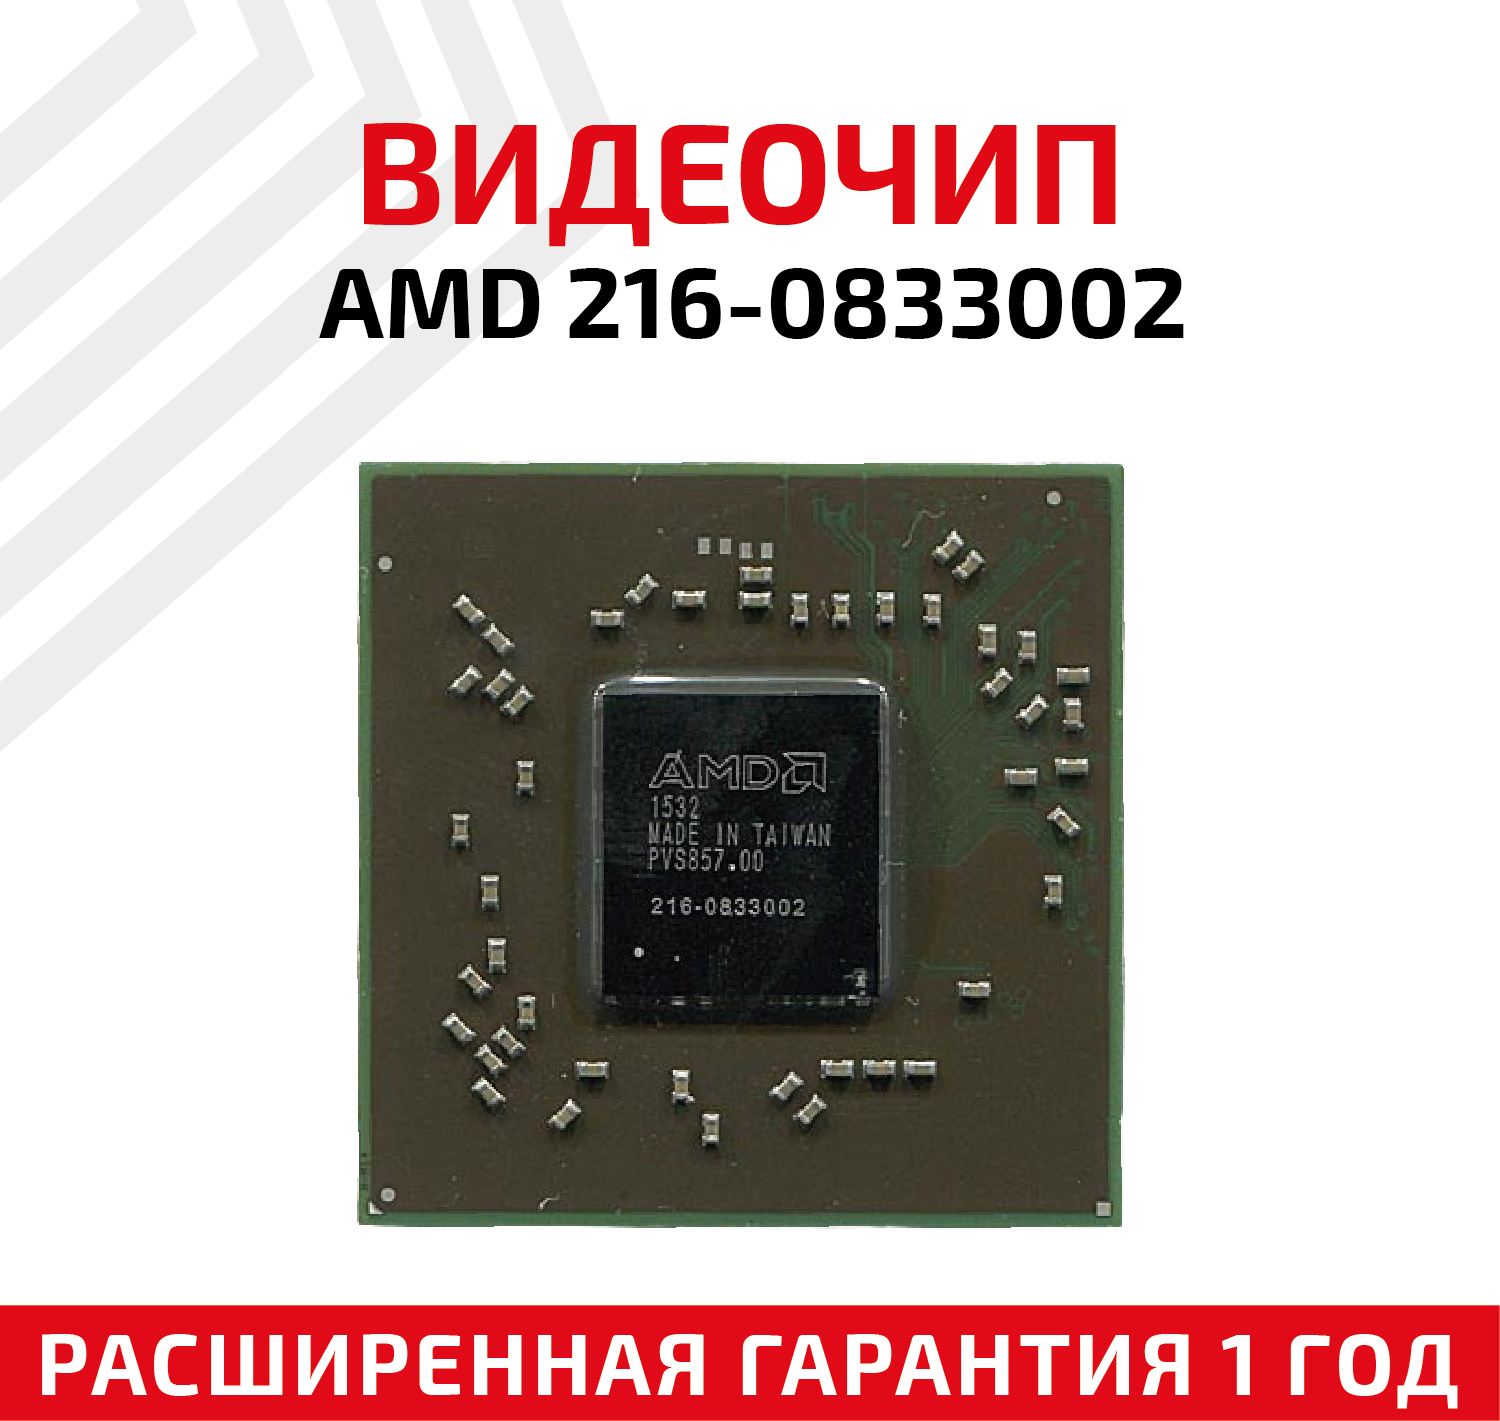 Видеочип AMD 216-0833002